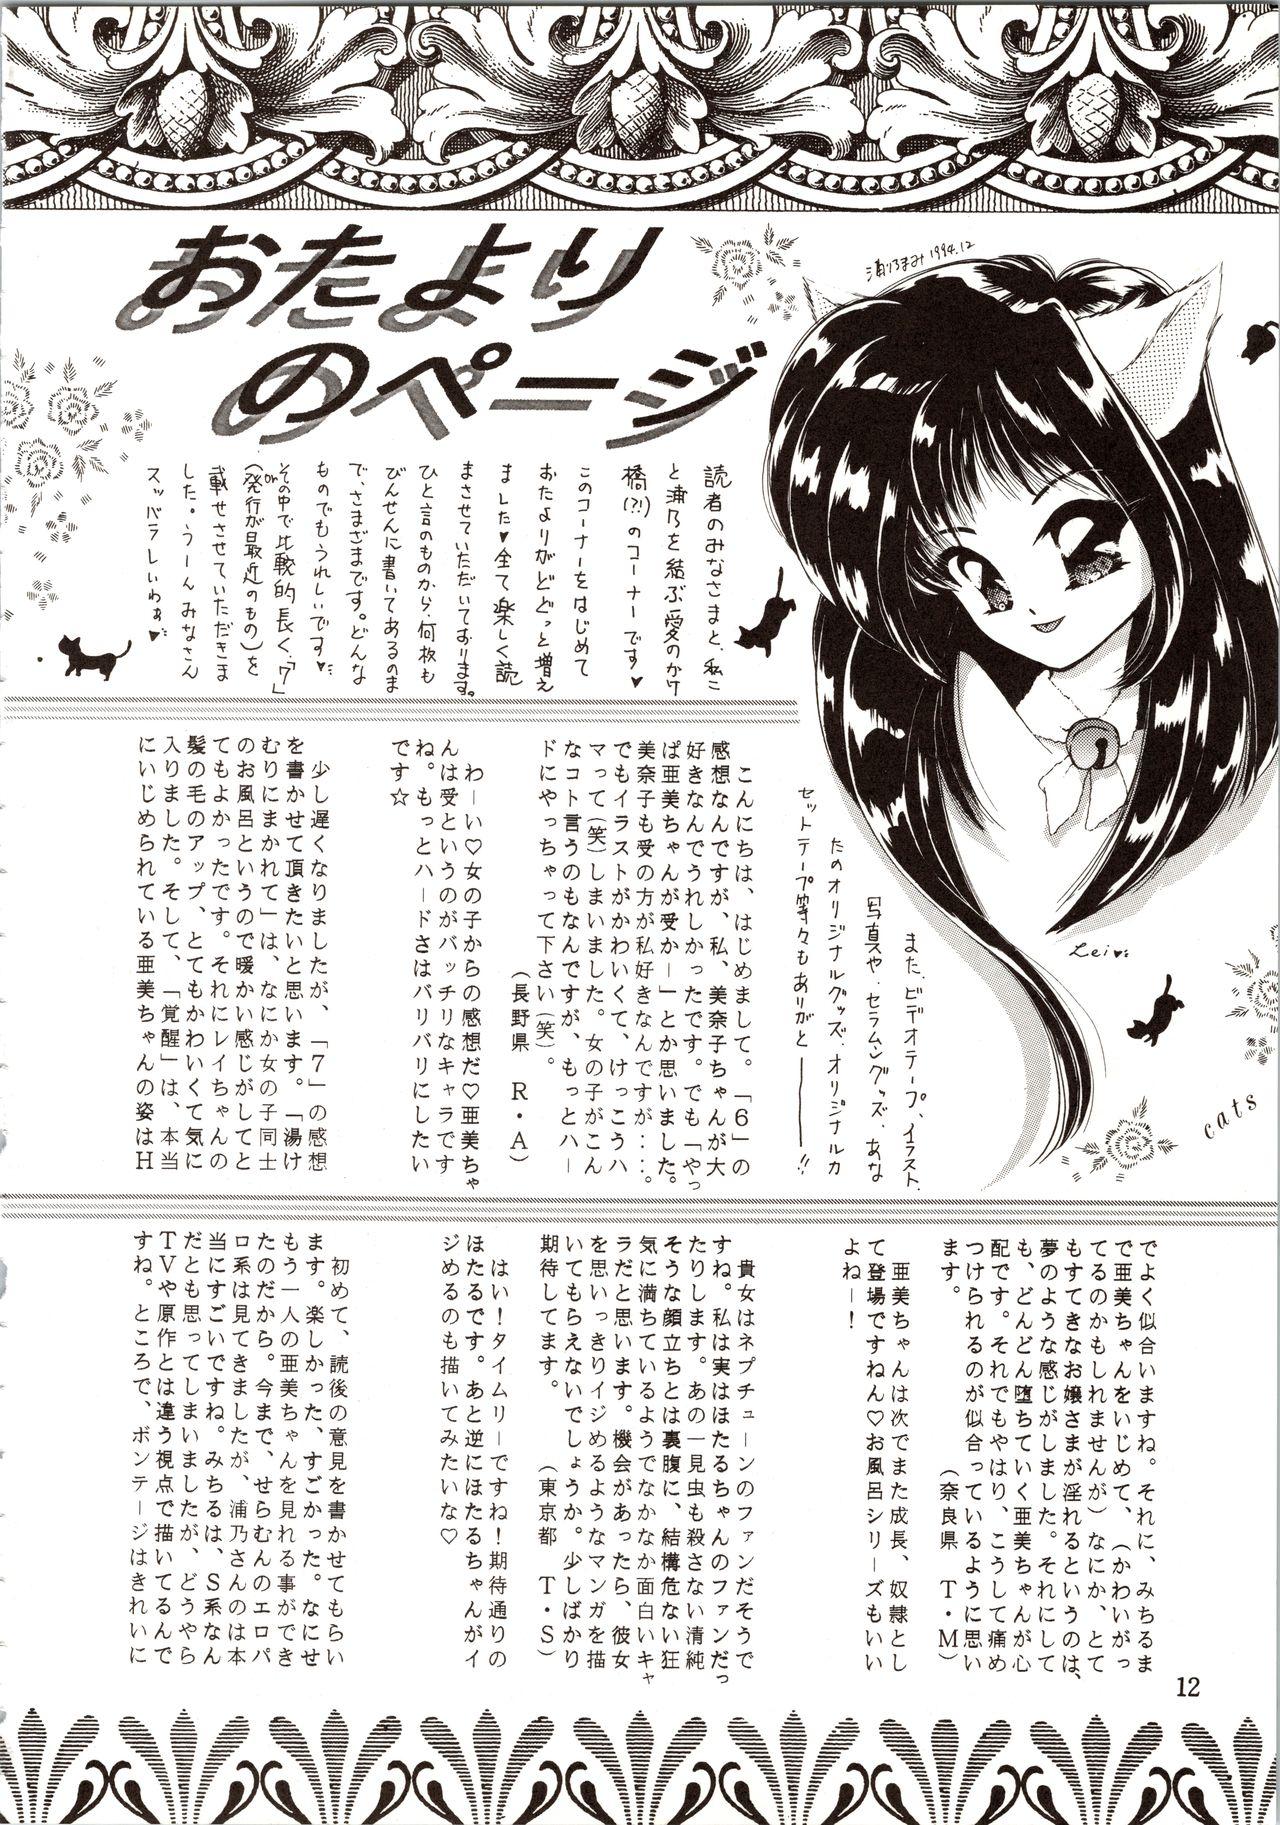 Amatuer Porn Tsukiyo no Tawamure 8 - Sailor moon Deutsche - Page 12